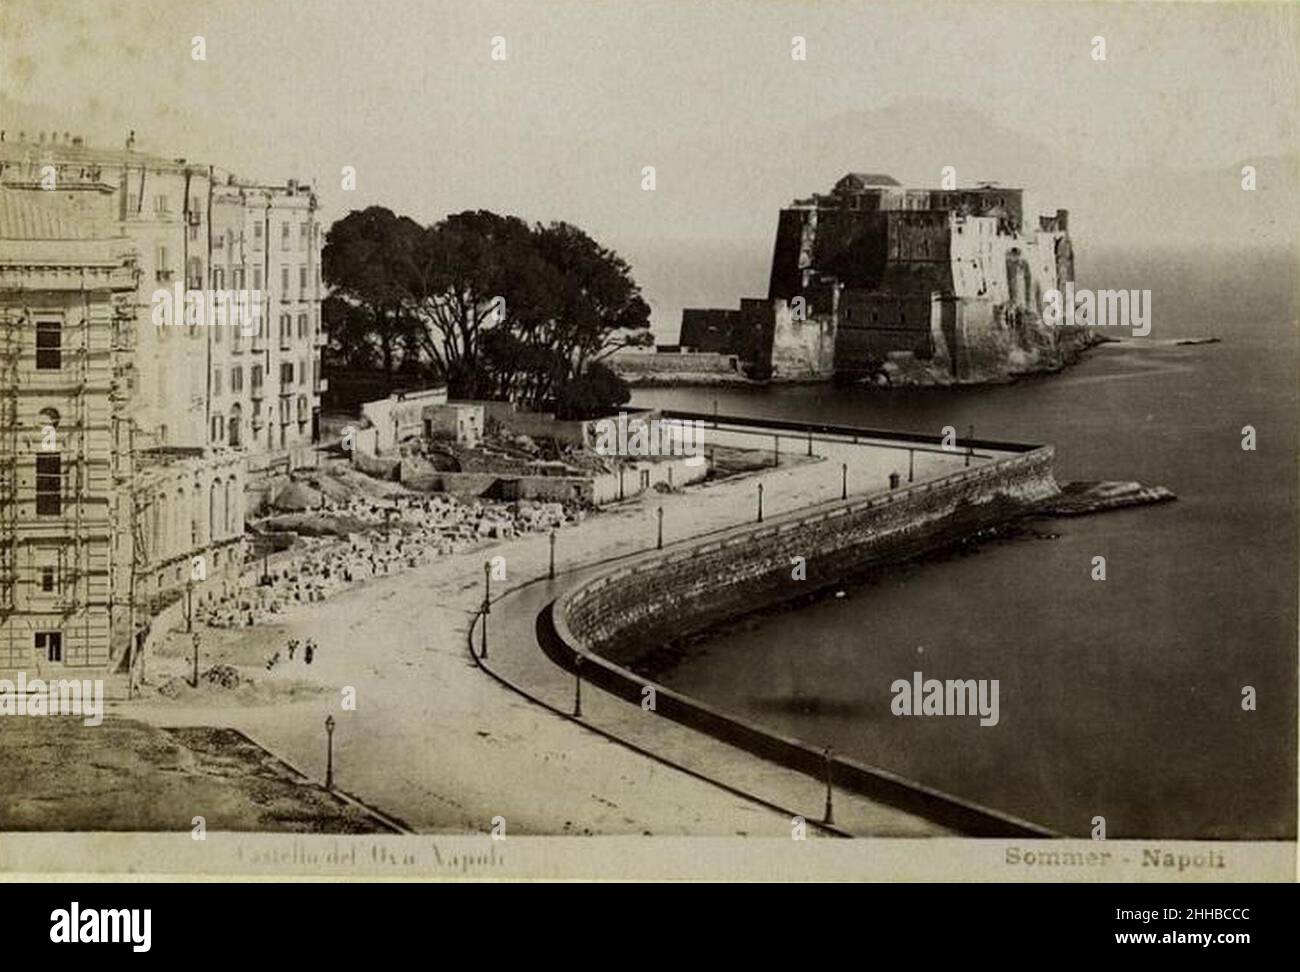 Sommer, Giorgio (1834-1914) - Castel dell'Ovo - Napoli. Stockfoto